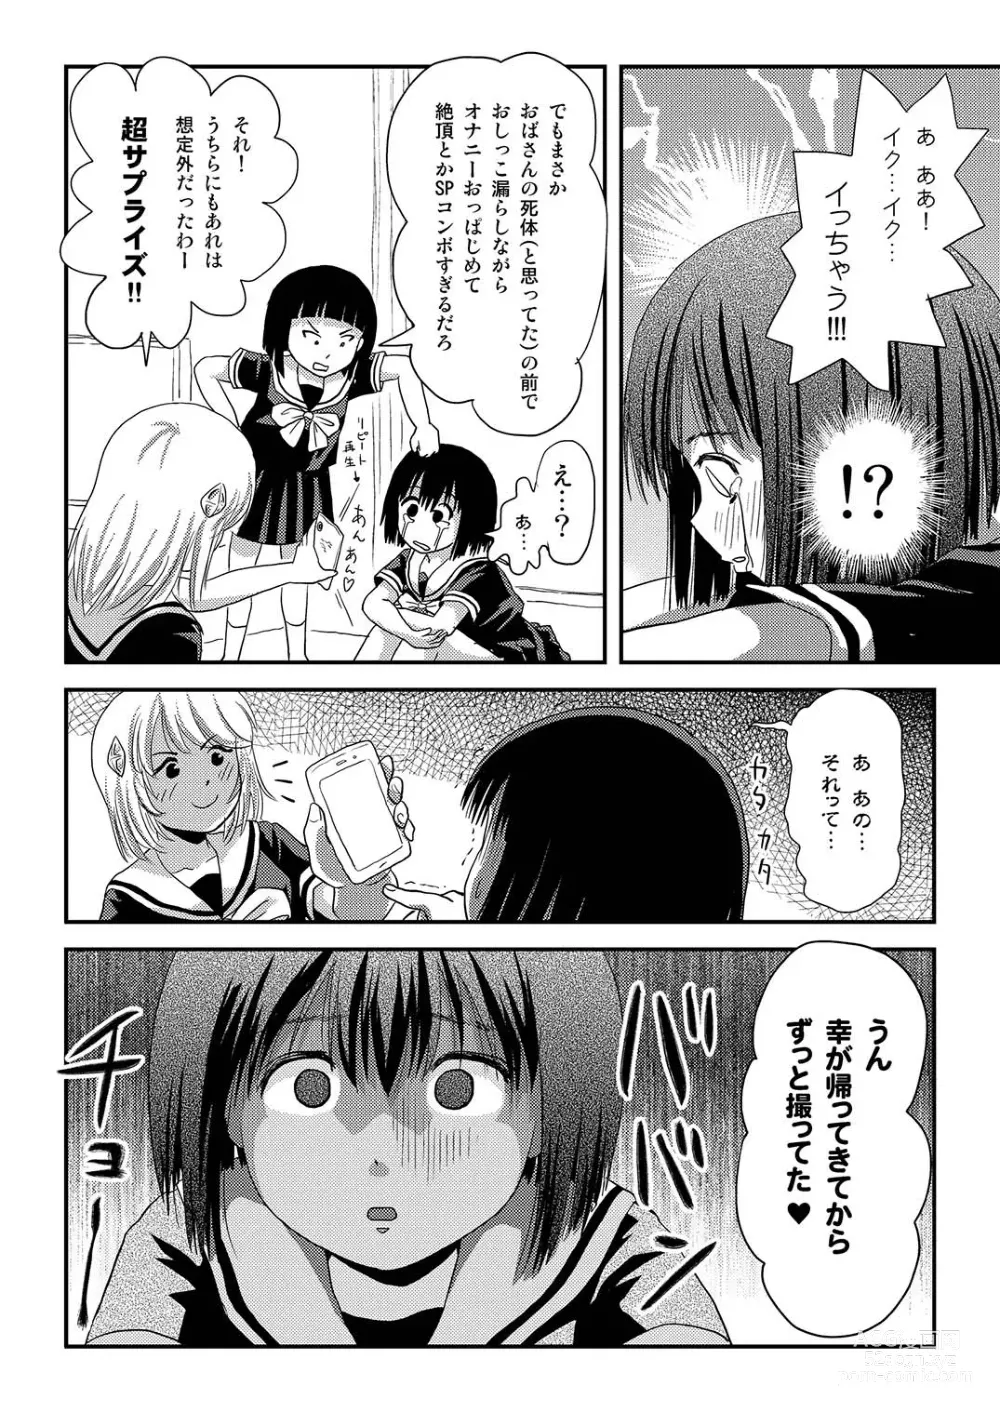 Page 12 of doujinshi Sonna no zurui 2